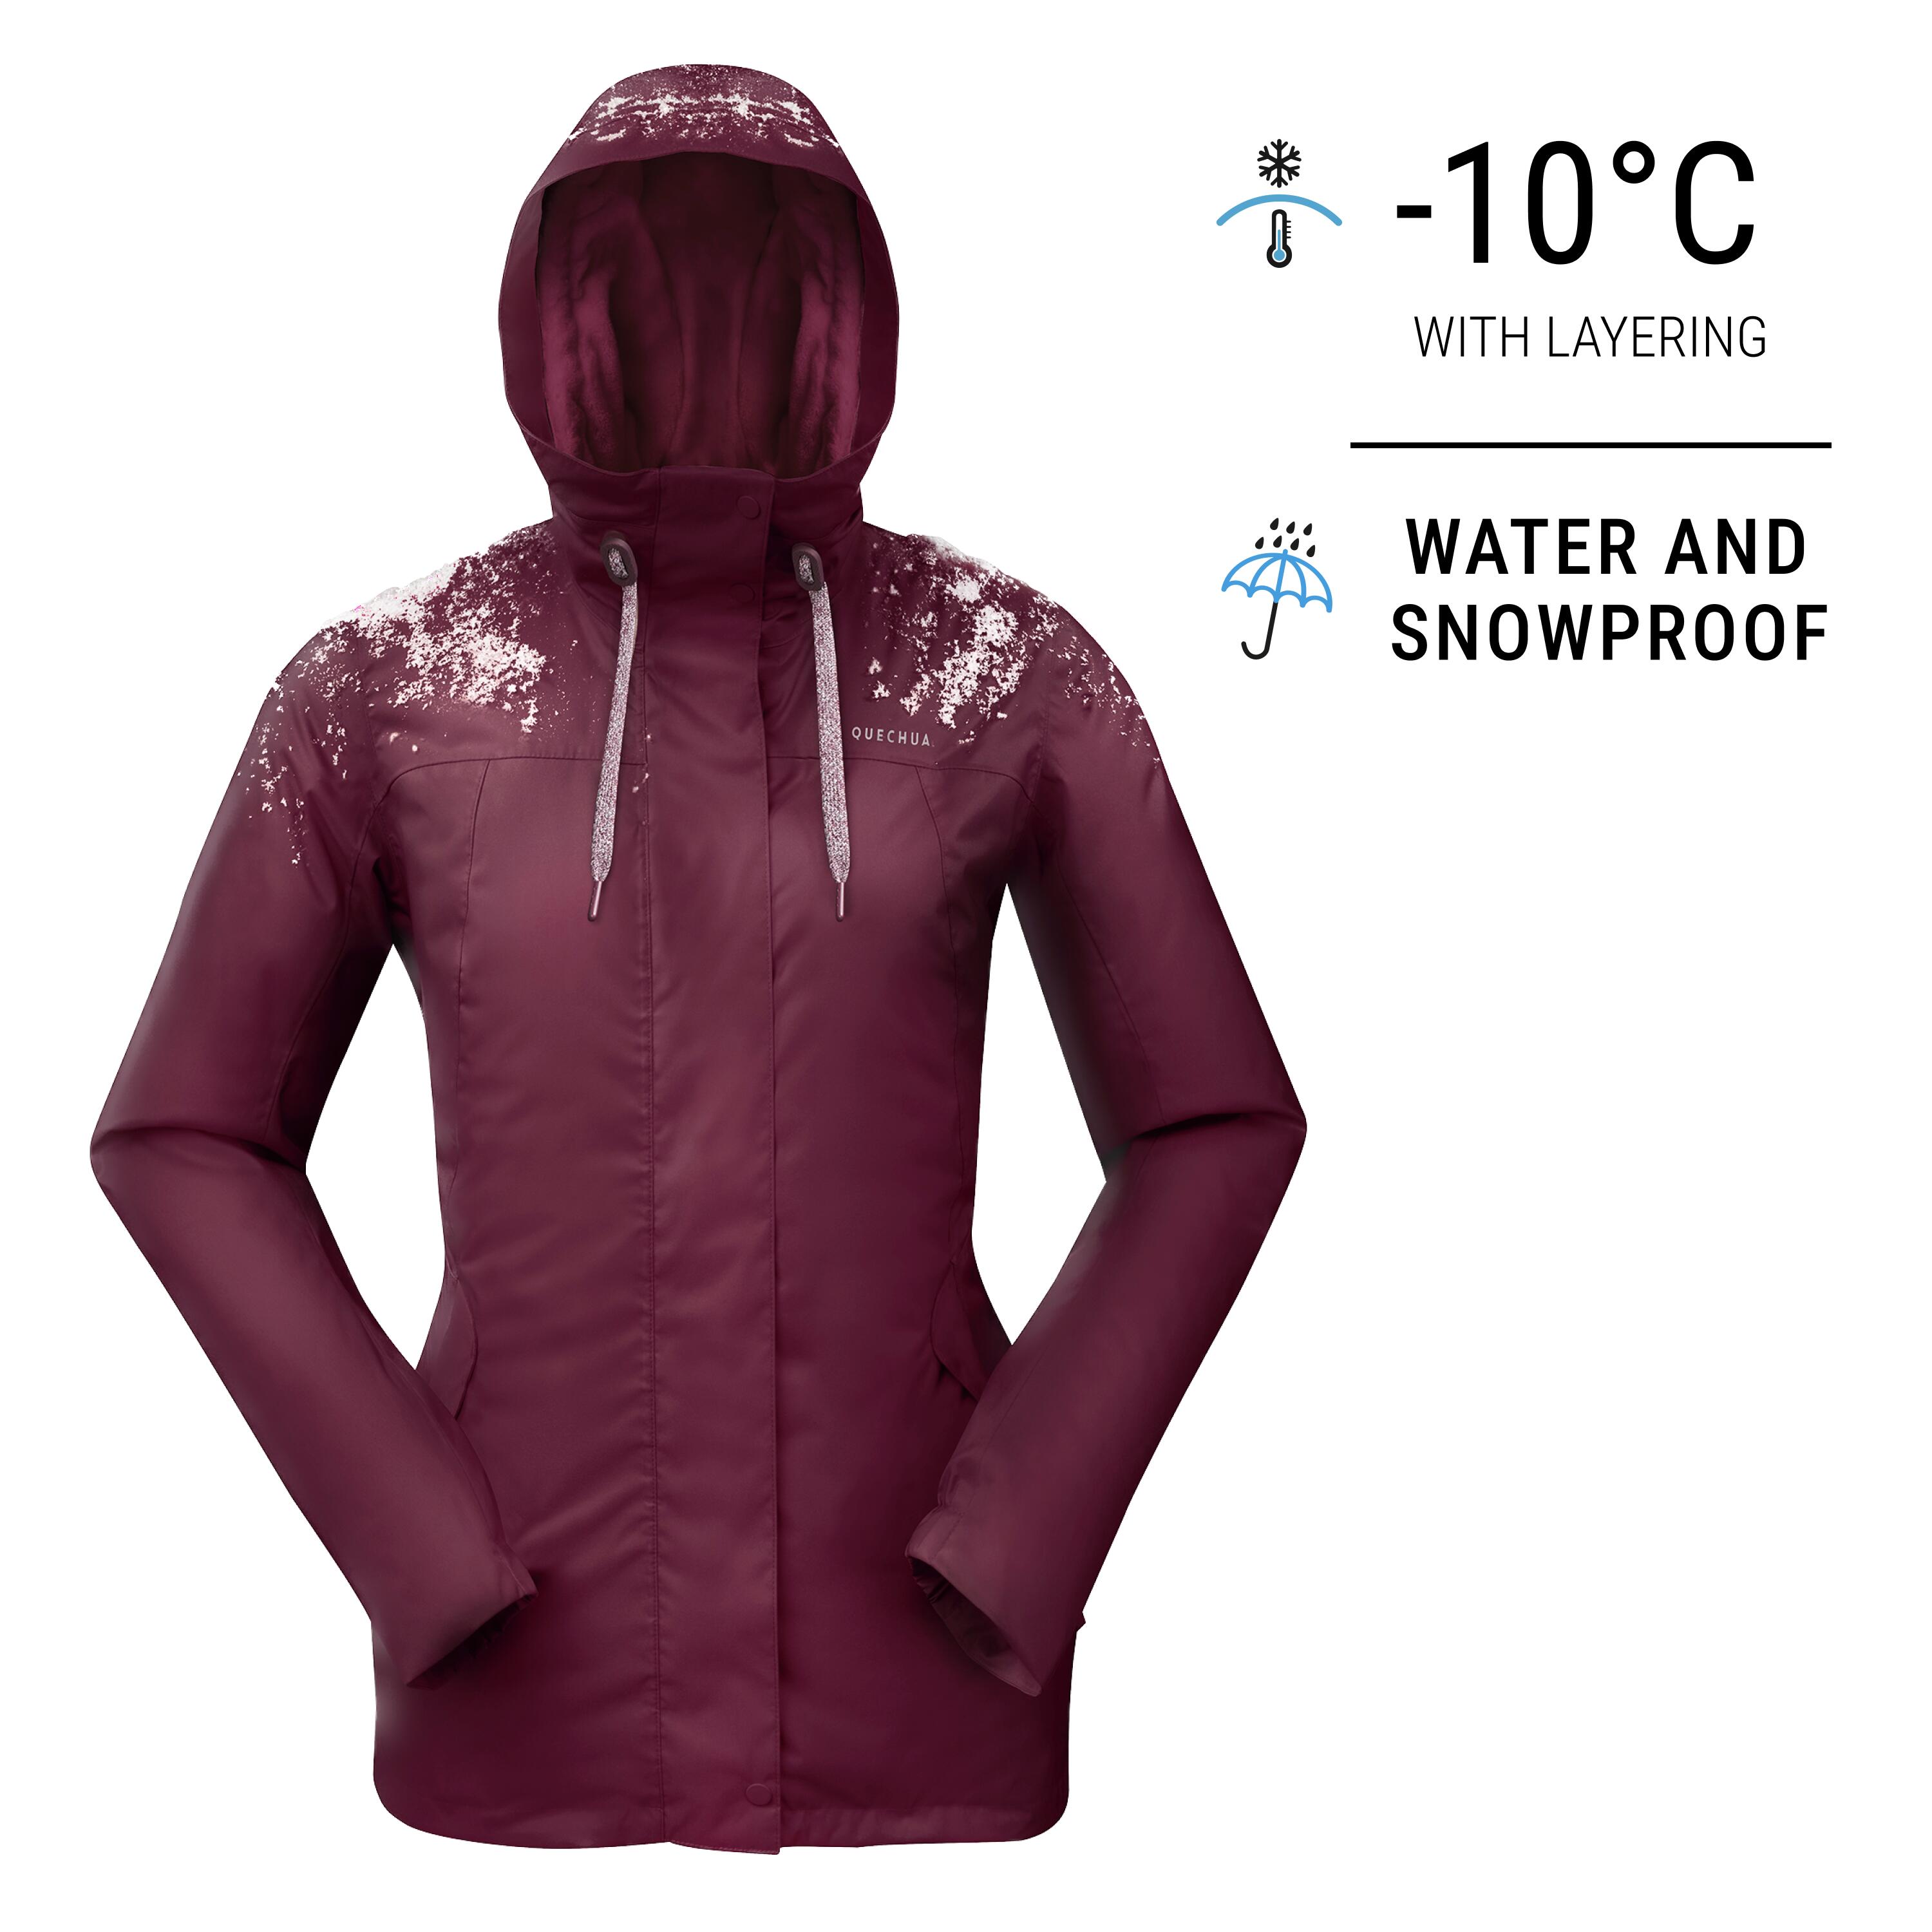 Outdoorweb.eu - Kinetic Alpine 2.0 Jacket Women's, red grapefruit - Women's  mountain hiking jacket - RAB - 266.61 € - outdoorové oblečení a vybavení  shop